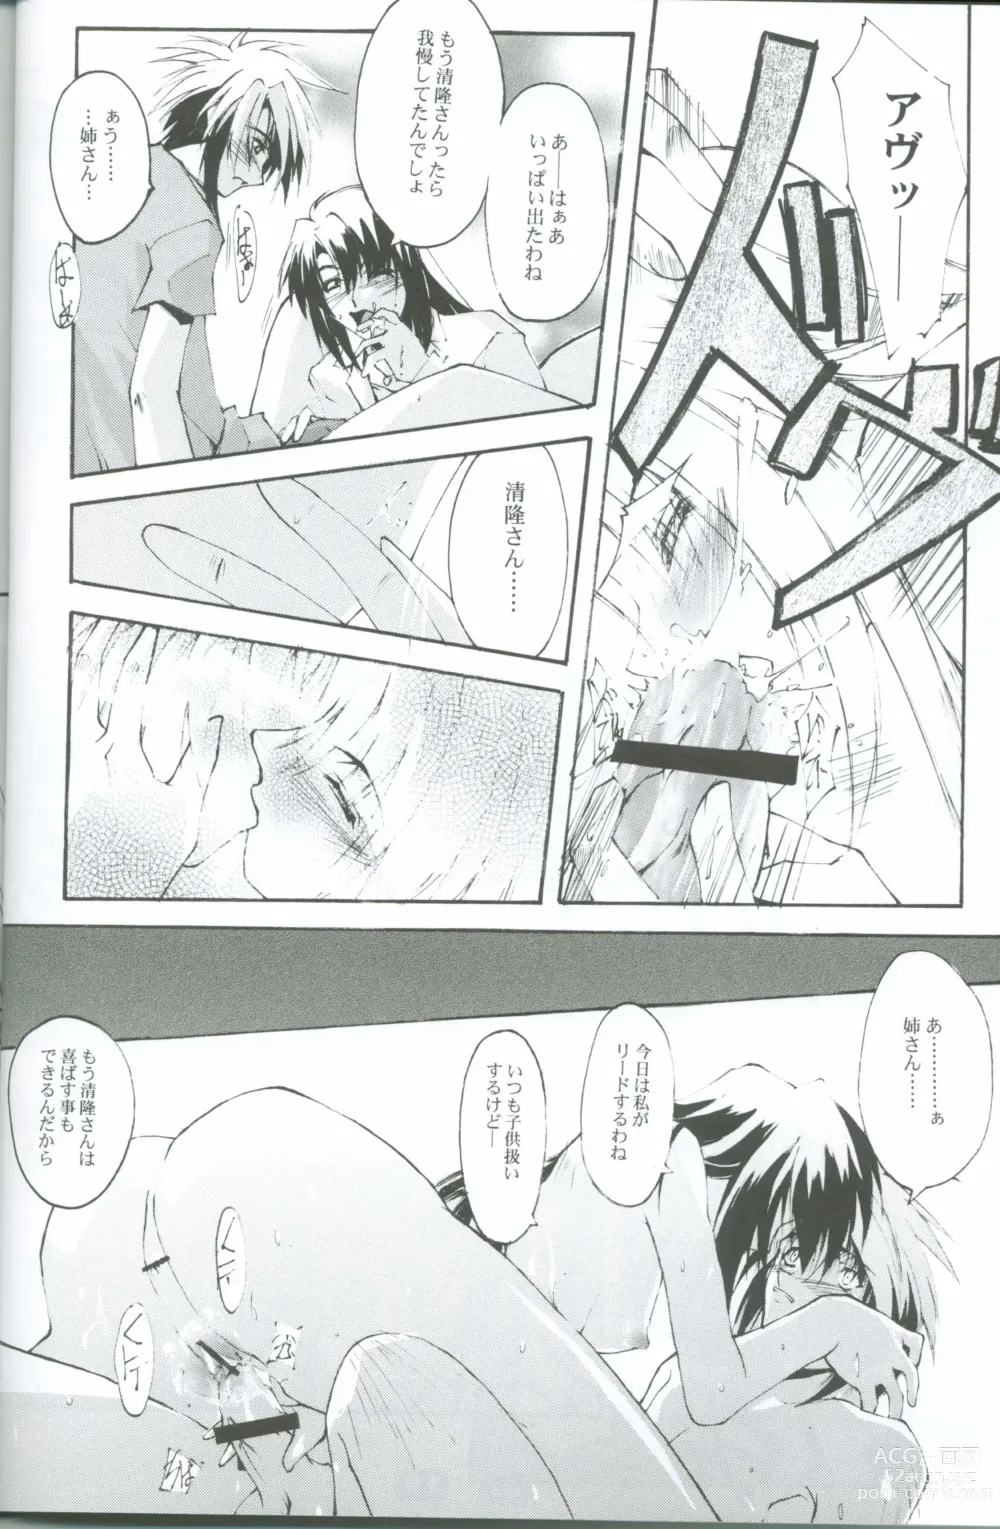 Page 16 of doujinshi KoToNoN